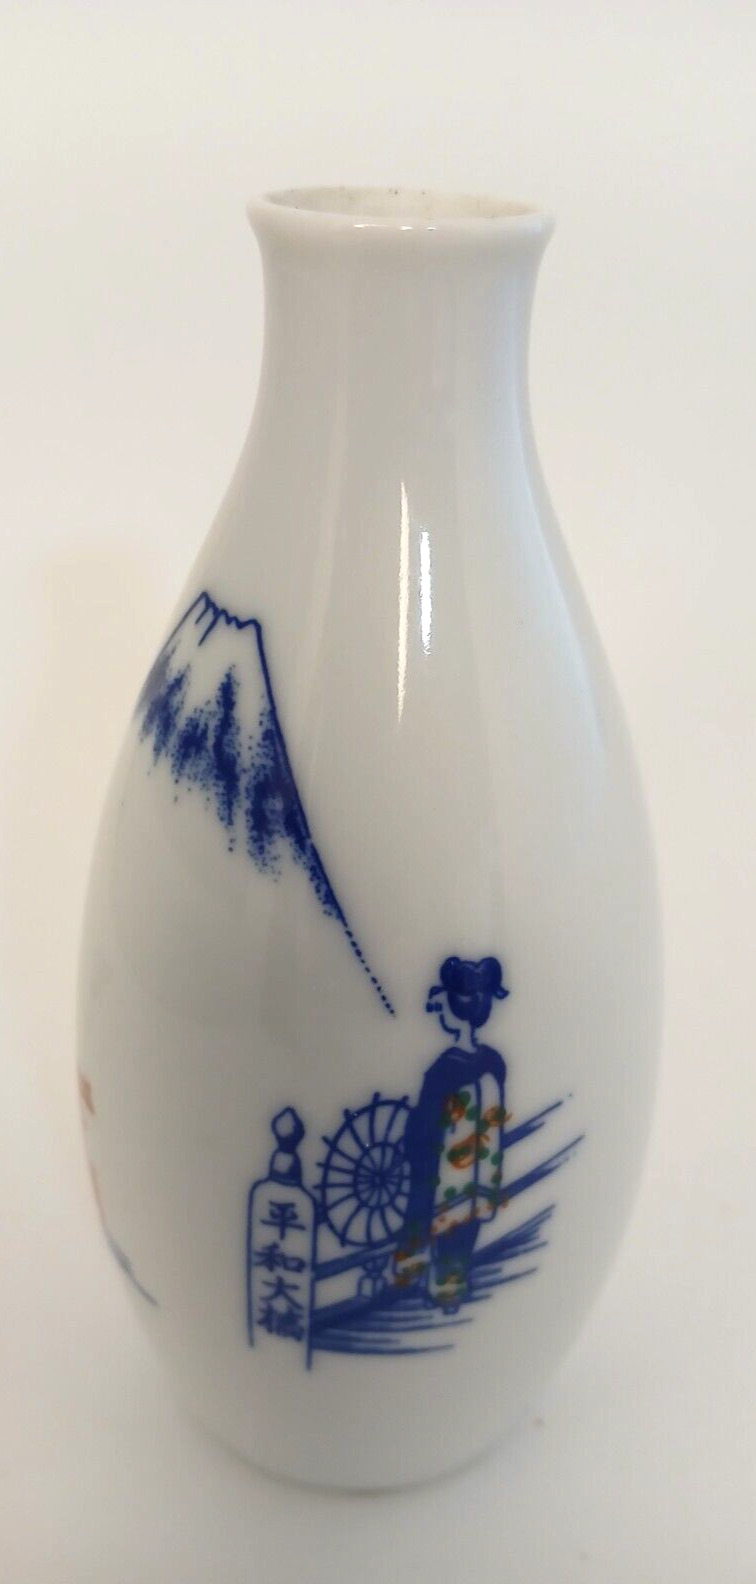 Japanese Sake Bottle Vintage Gekkeikan White Blue/Mountain/Japanese Woman/Pagoda